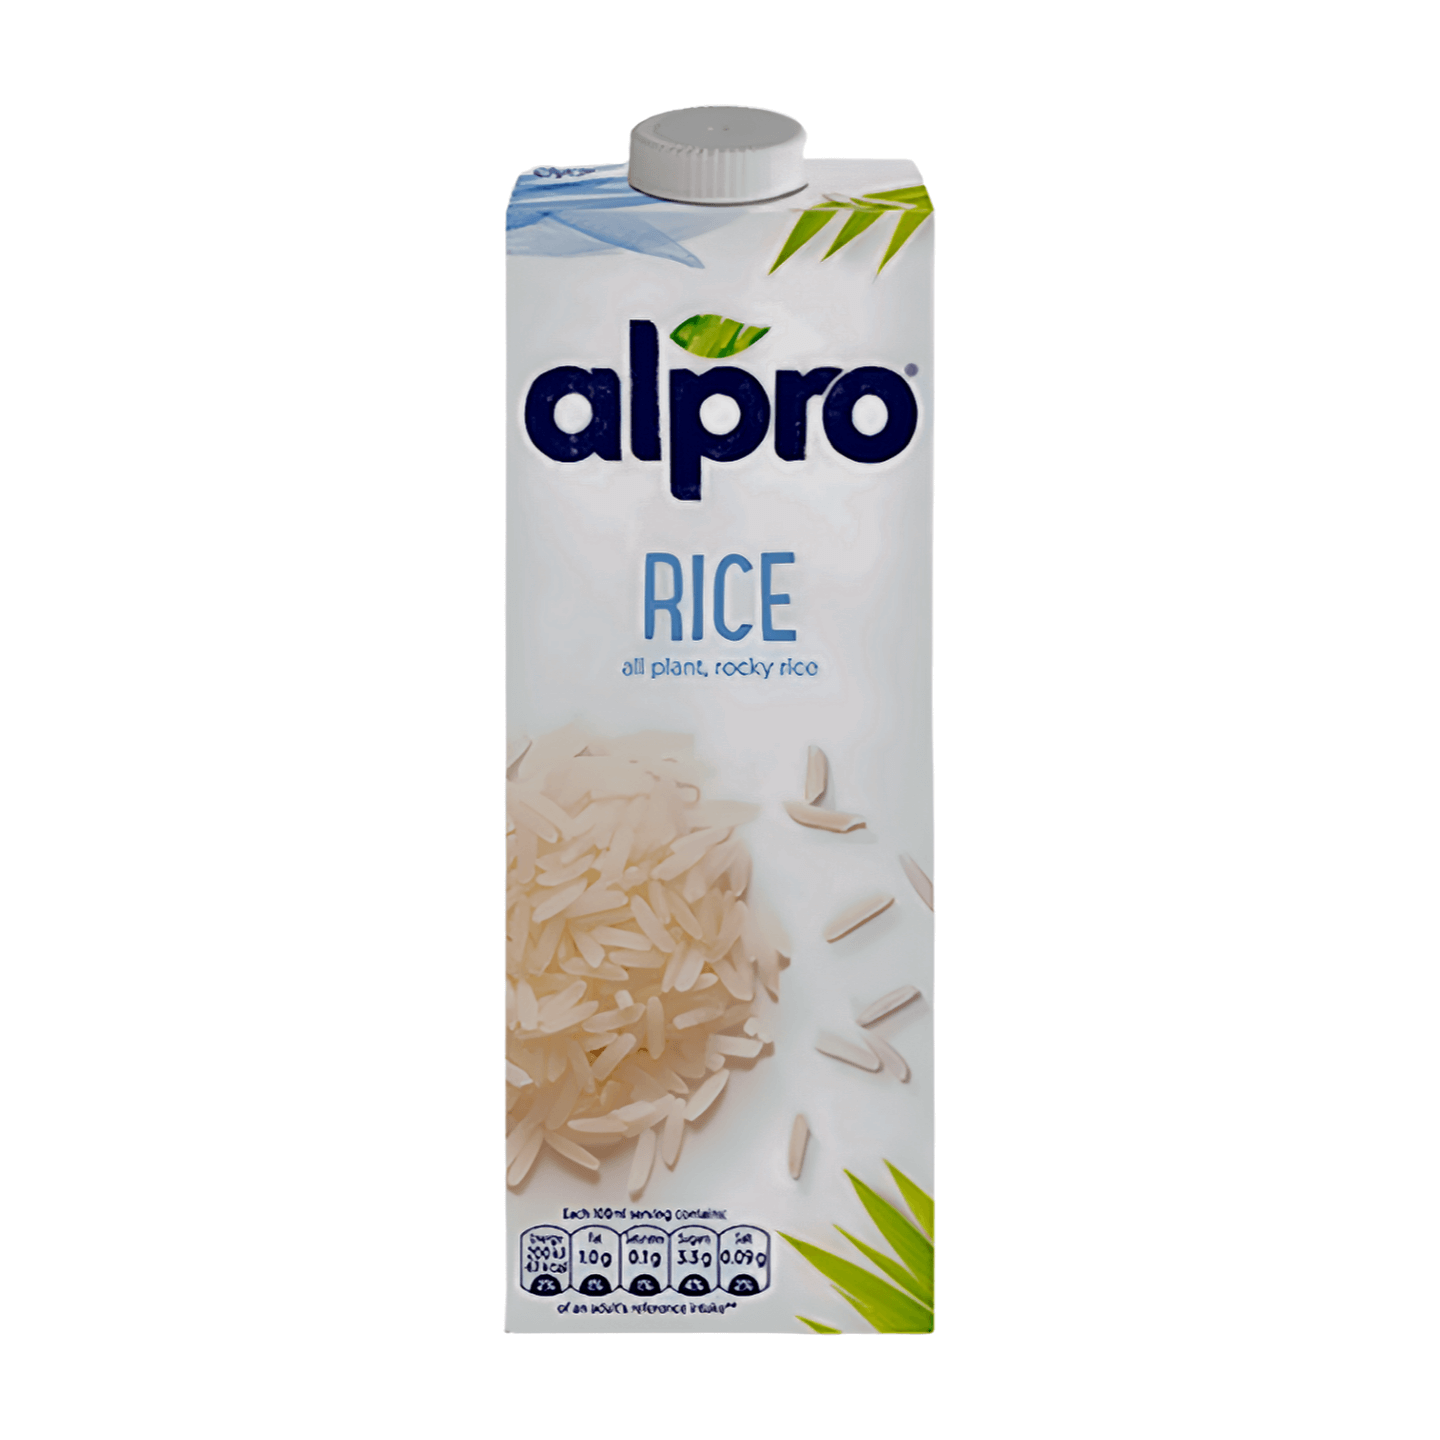 Alpro Rice Original